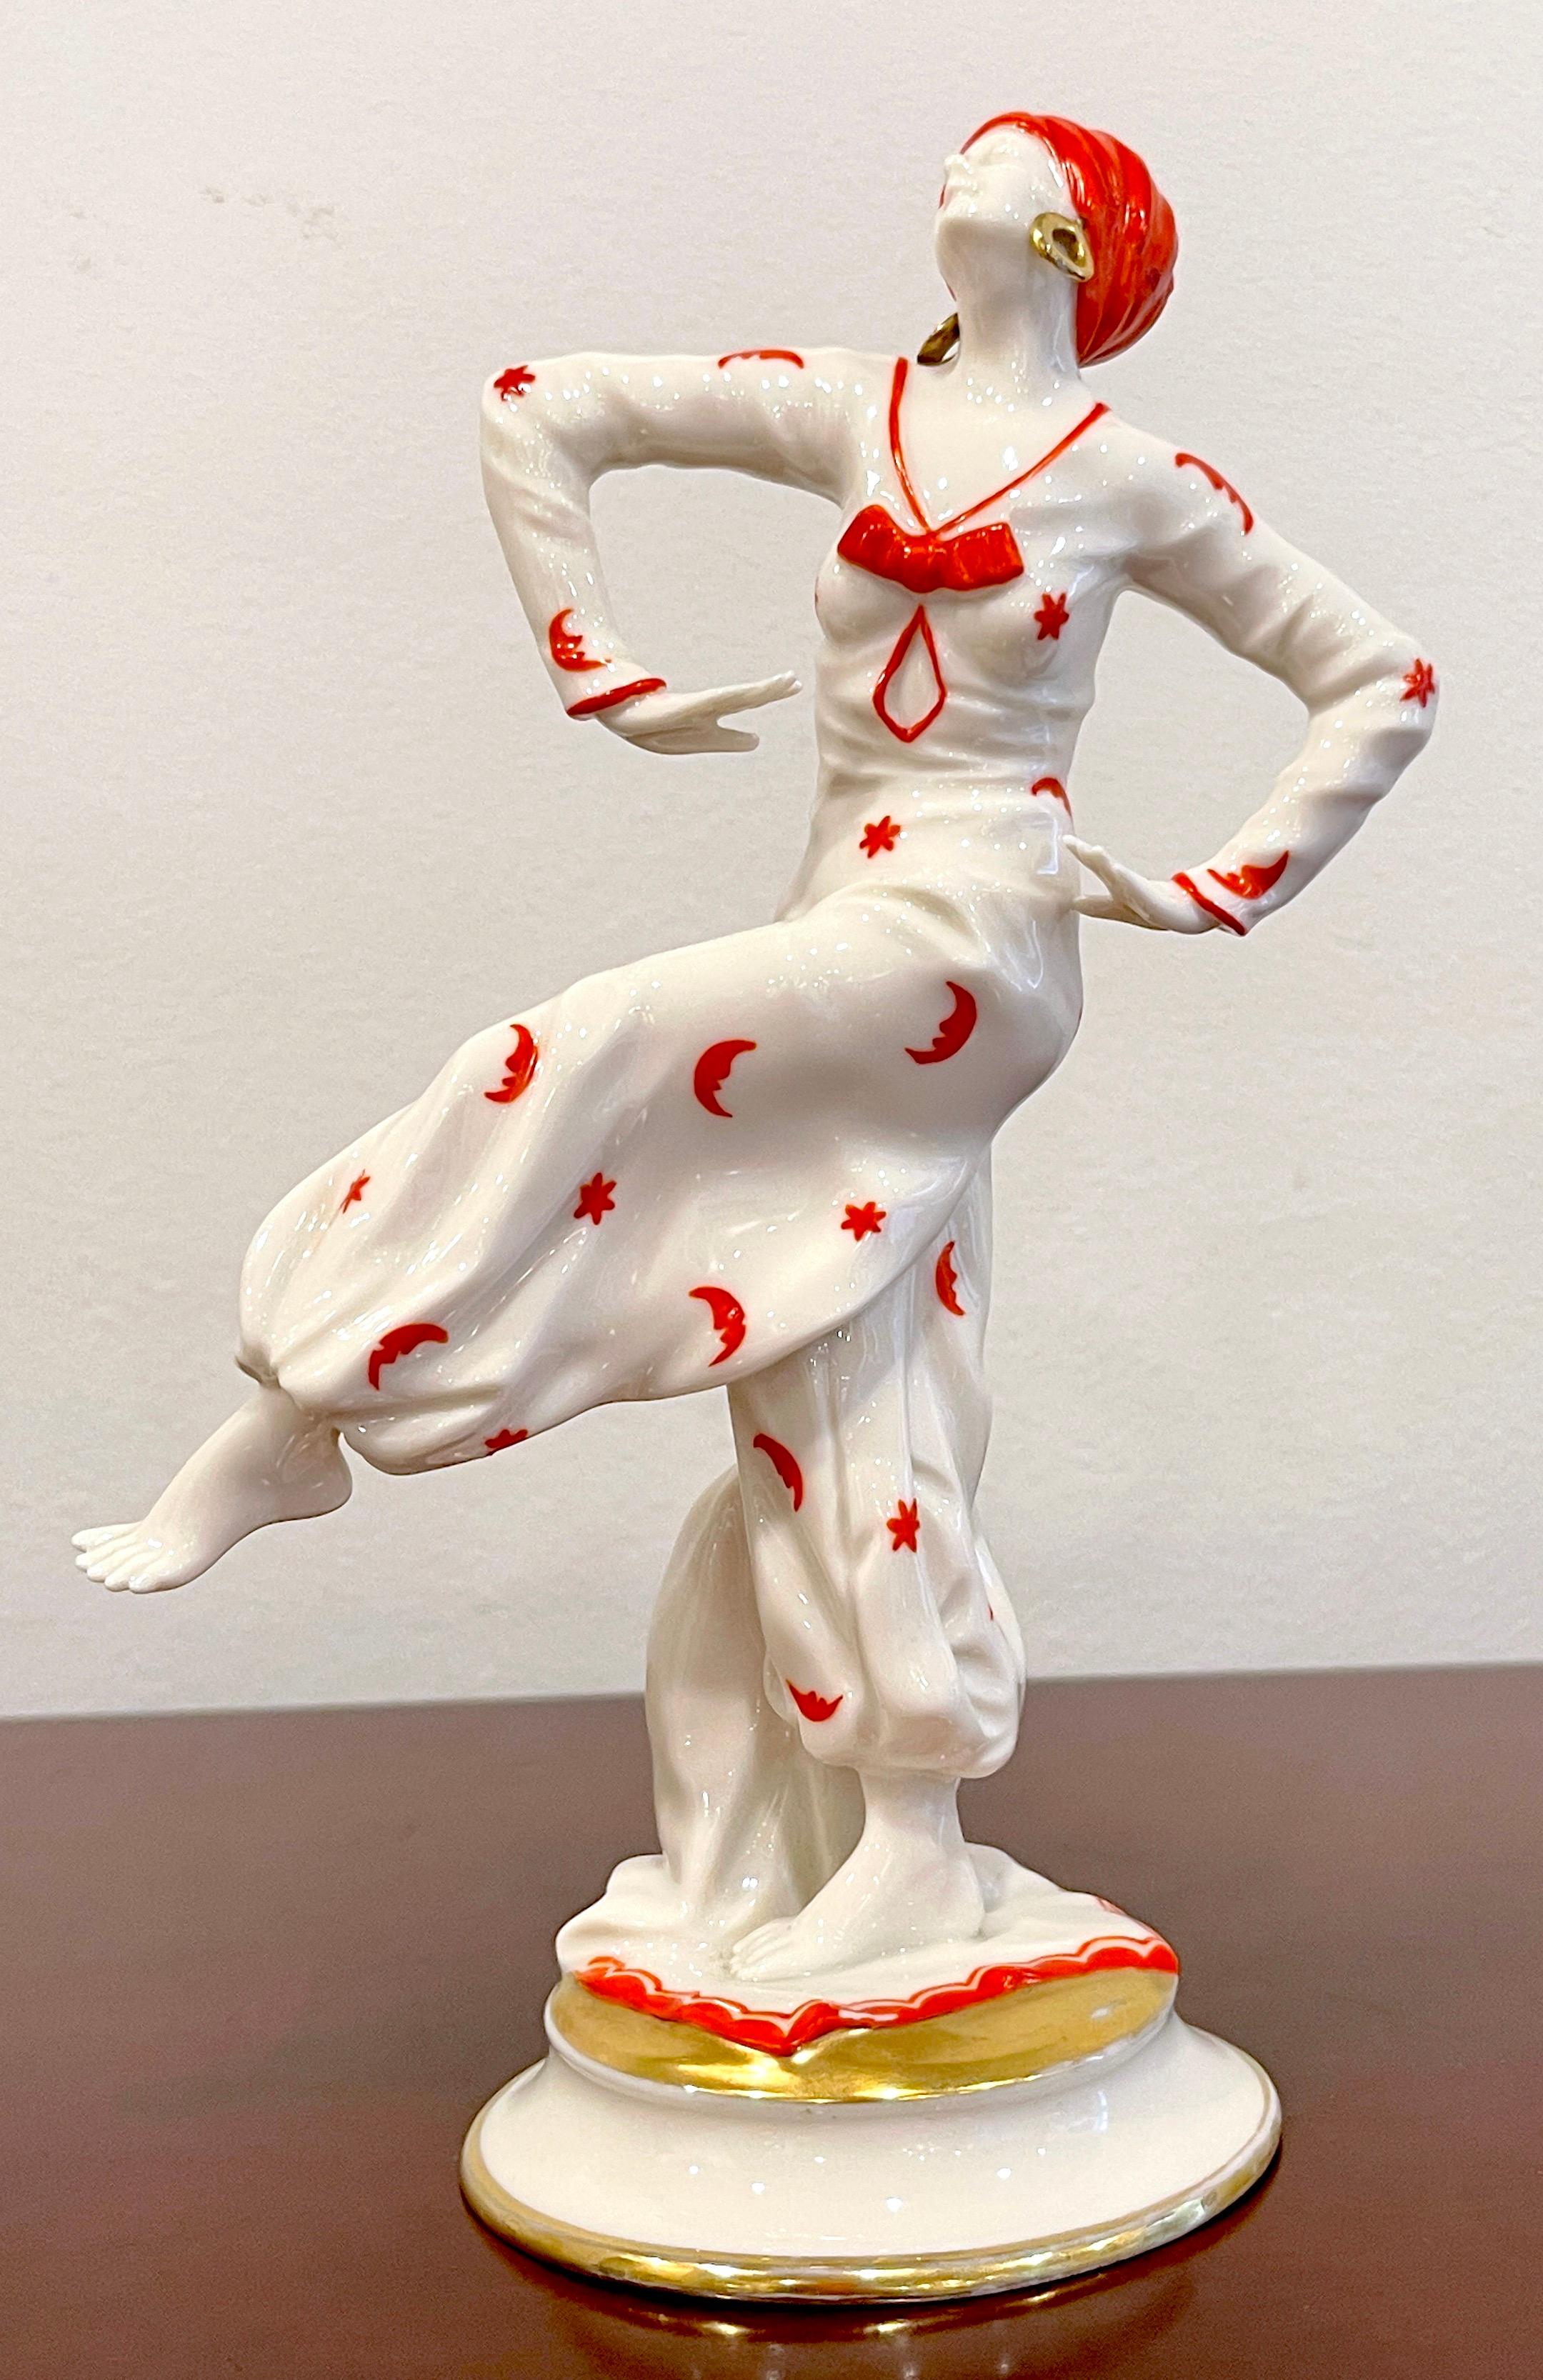 Art-Déco-Figur der „Mata Hari“ von Capodimonte / Naples Porzellan Company 
Italien, um 1925
Ein außergewöhnliches Werk, das sich durch Anmut und Bewegung auszeichnet und subtil von Hand gemalt wurde. Die verführerische Tänzerin mit Turban und